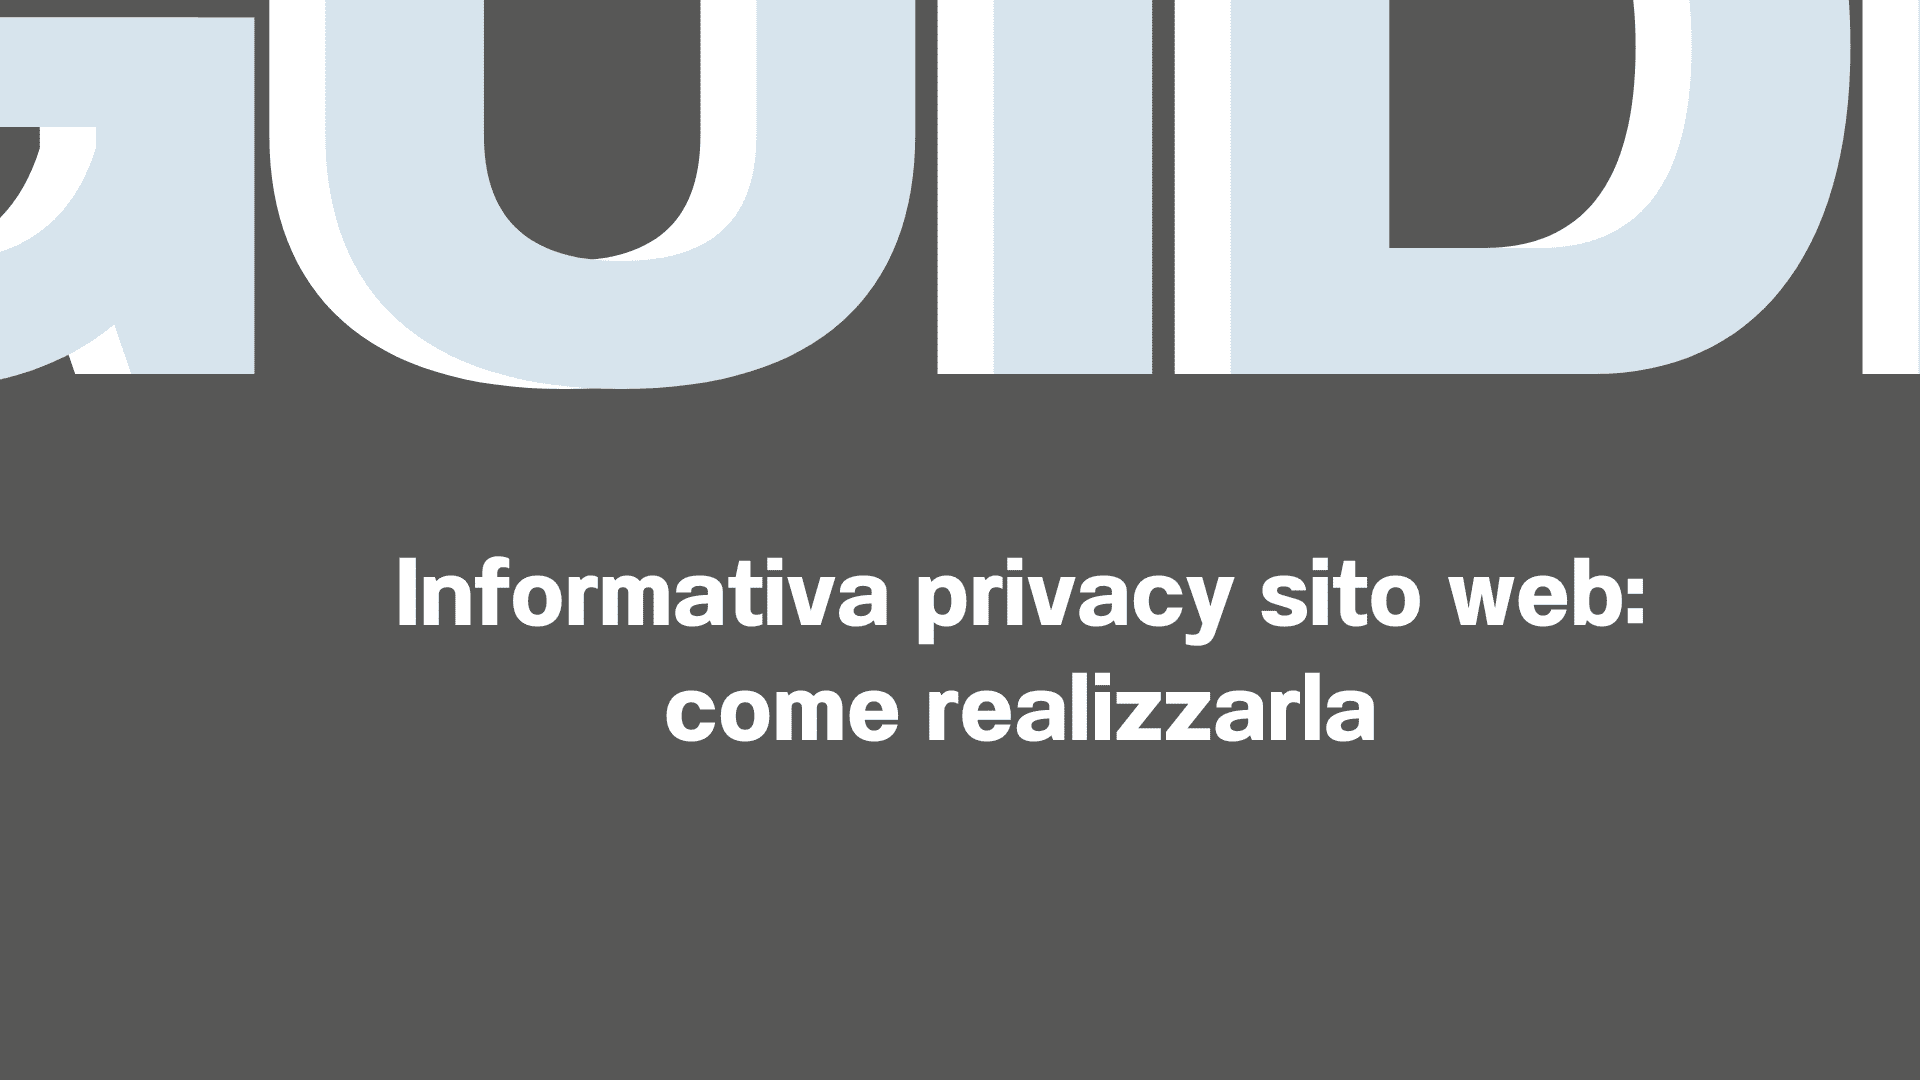 Informativa privacy sito web come realizzarla